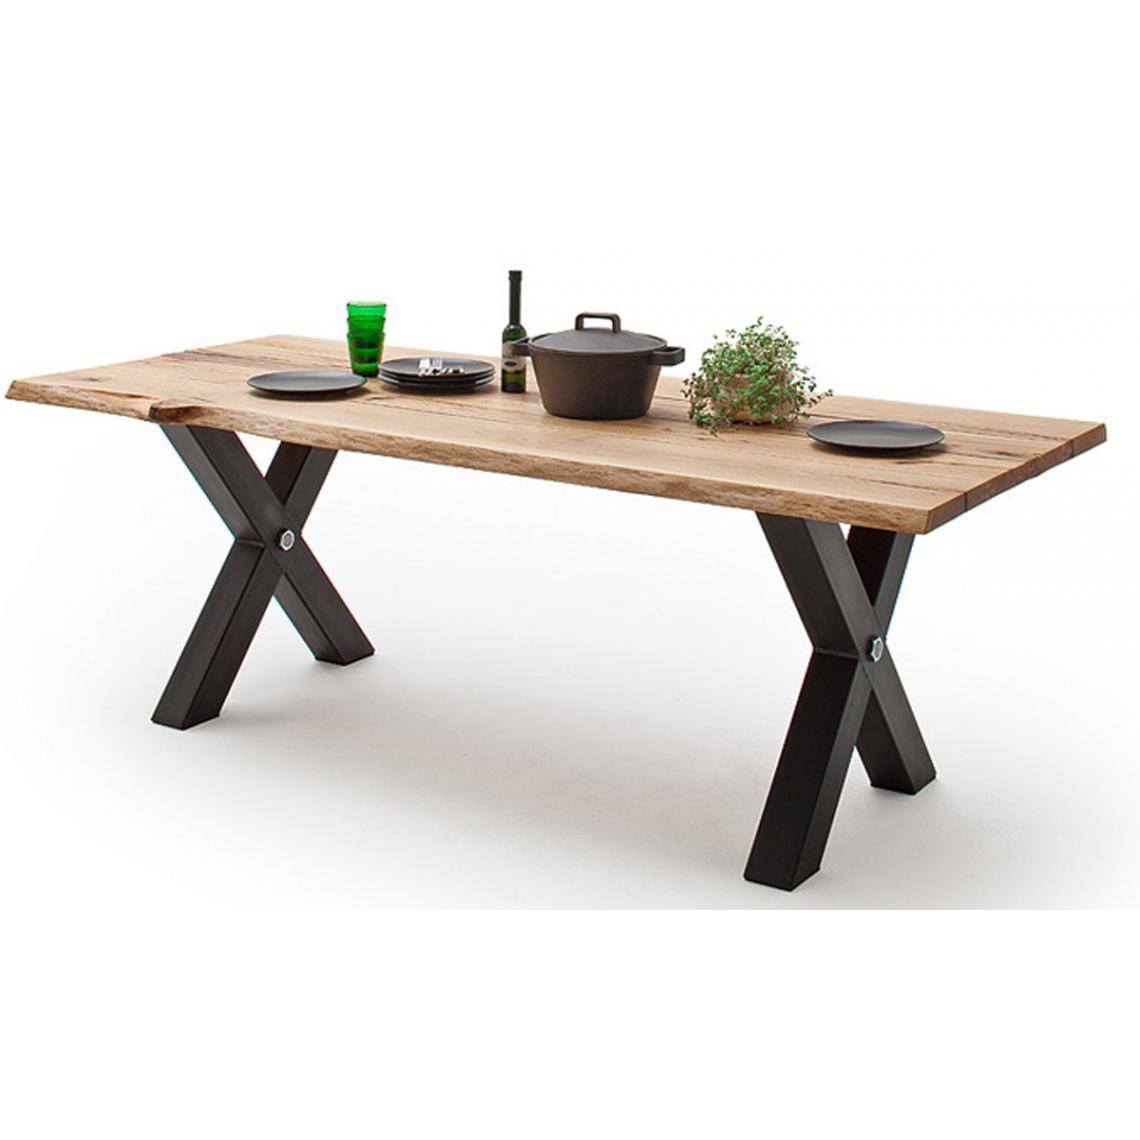 Pegane - Table à manger en bois massif coloris chêne sauvage et anthracite - L.240 x H.77 x P.100 cm - Tables à manger